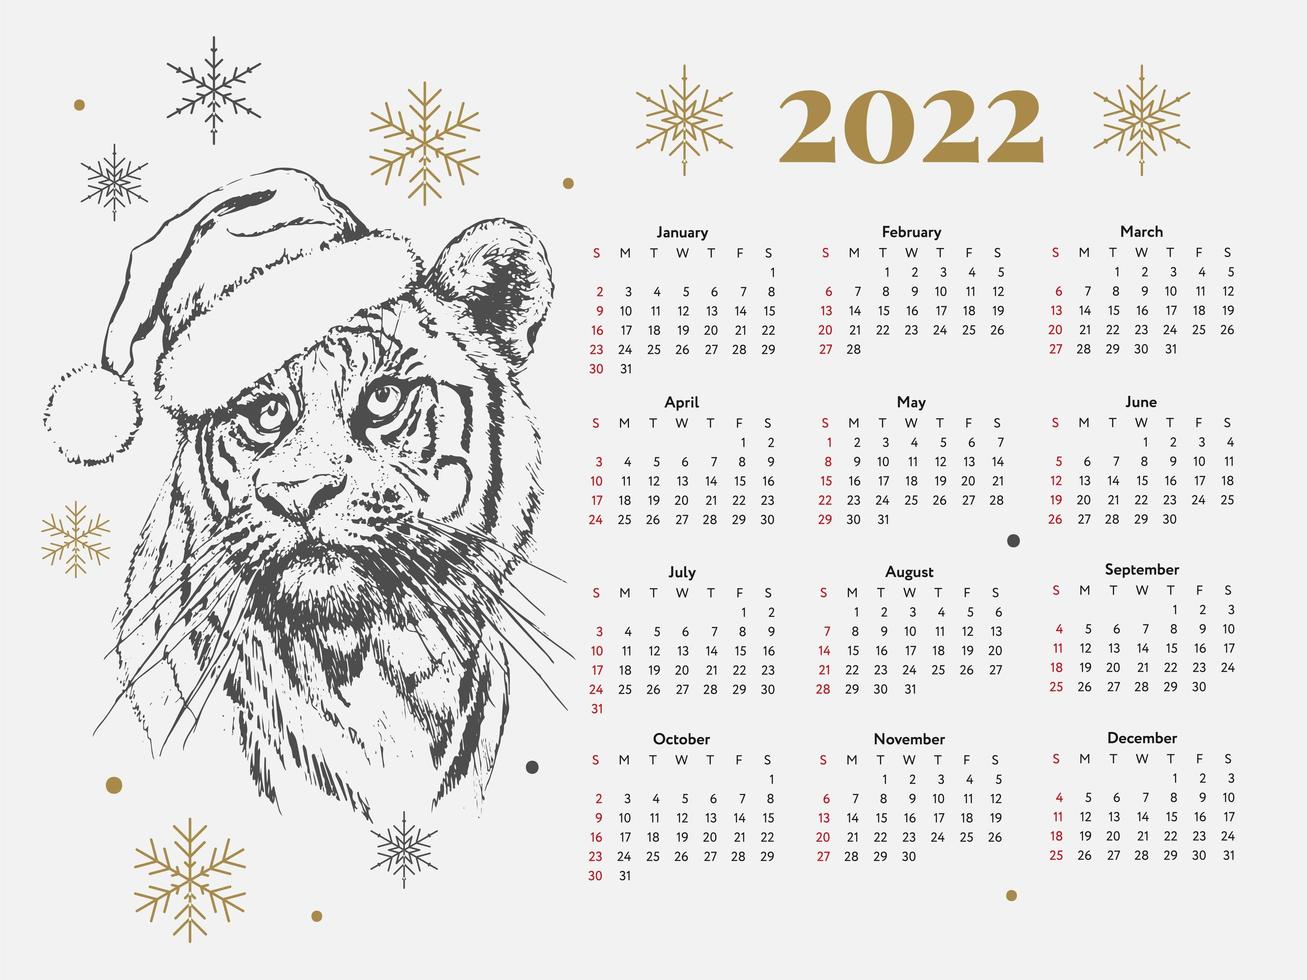 2022 tigre calendario navideño año nuevo boceto semana comienza el domingo. vector